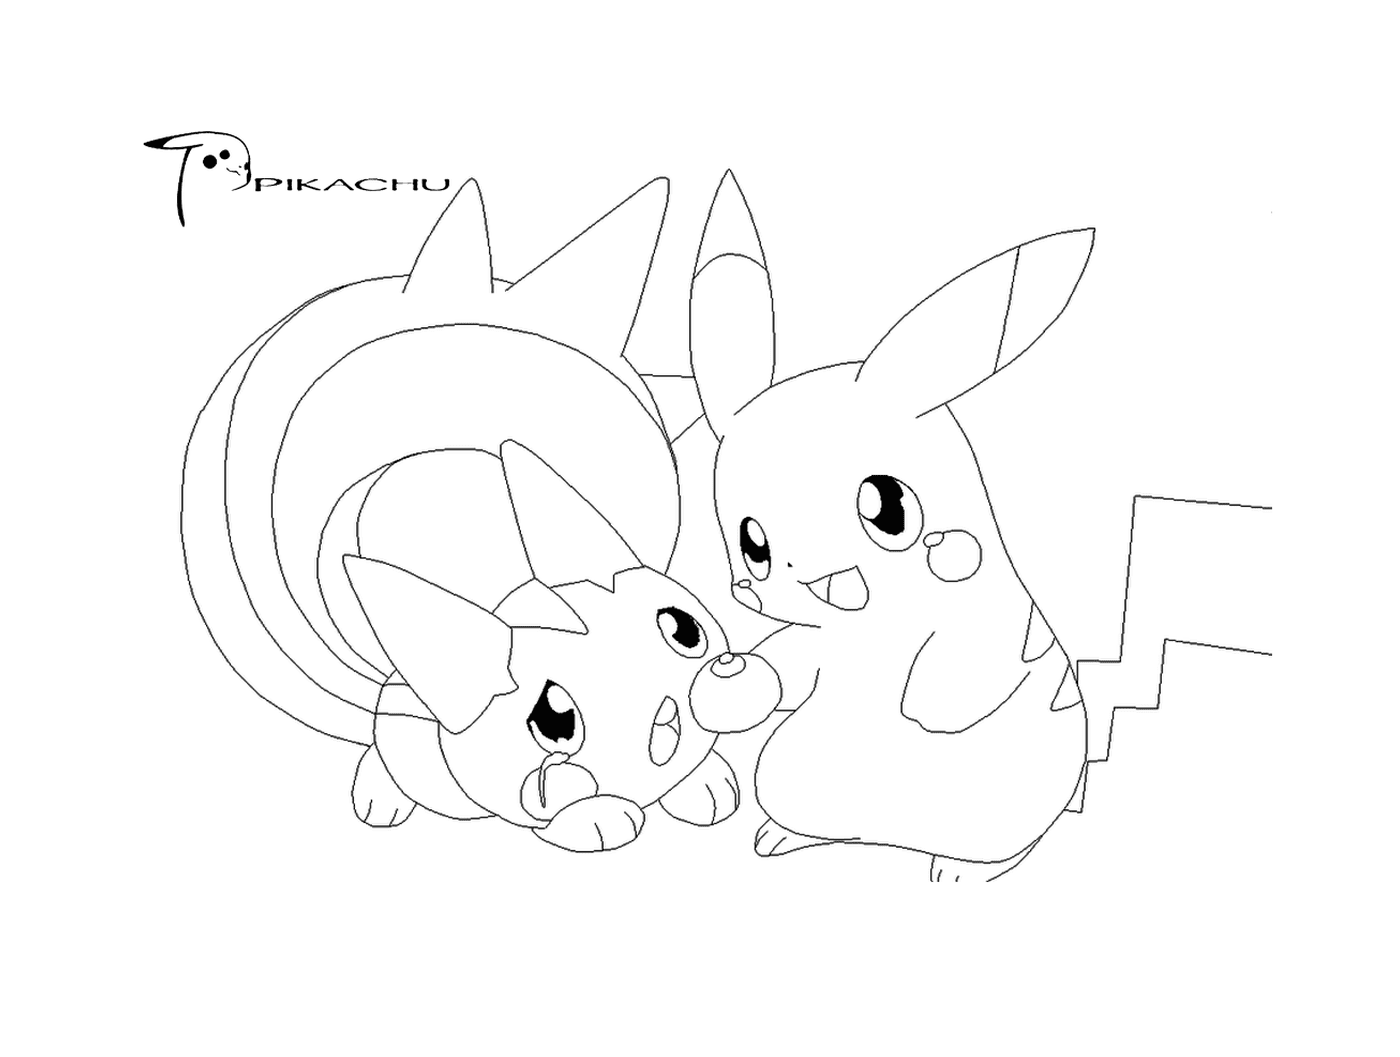  Dos Pikachus están juntos 